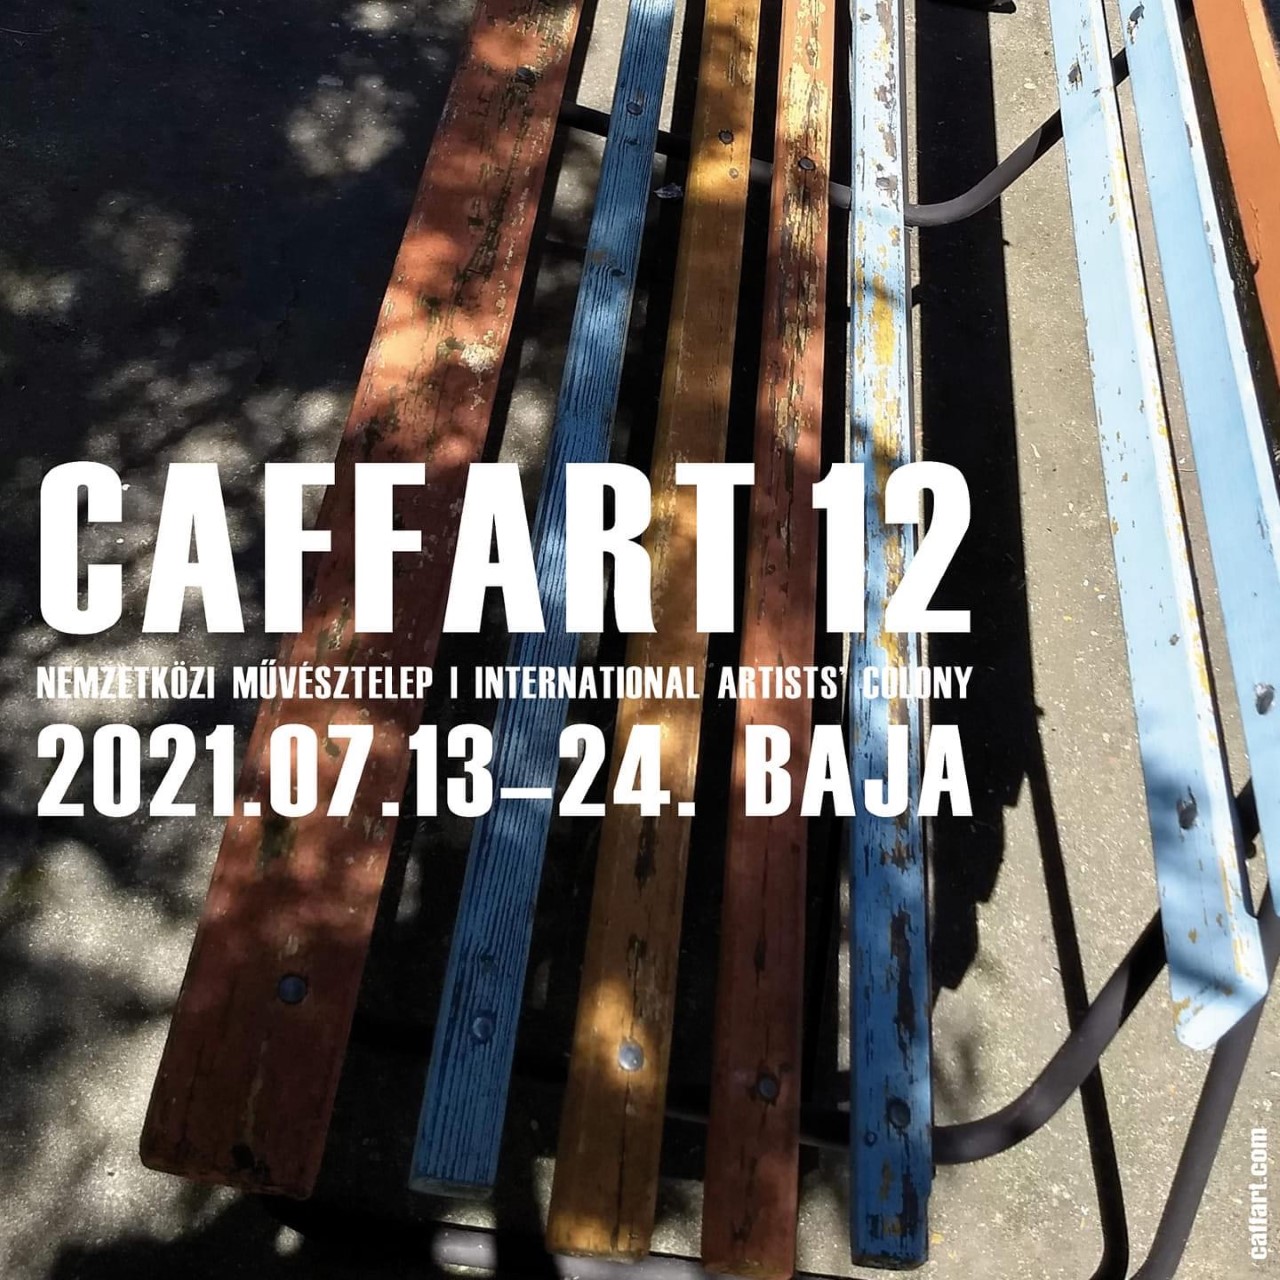 CAFFART 12 - plakát